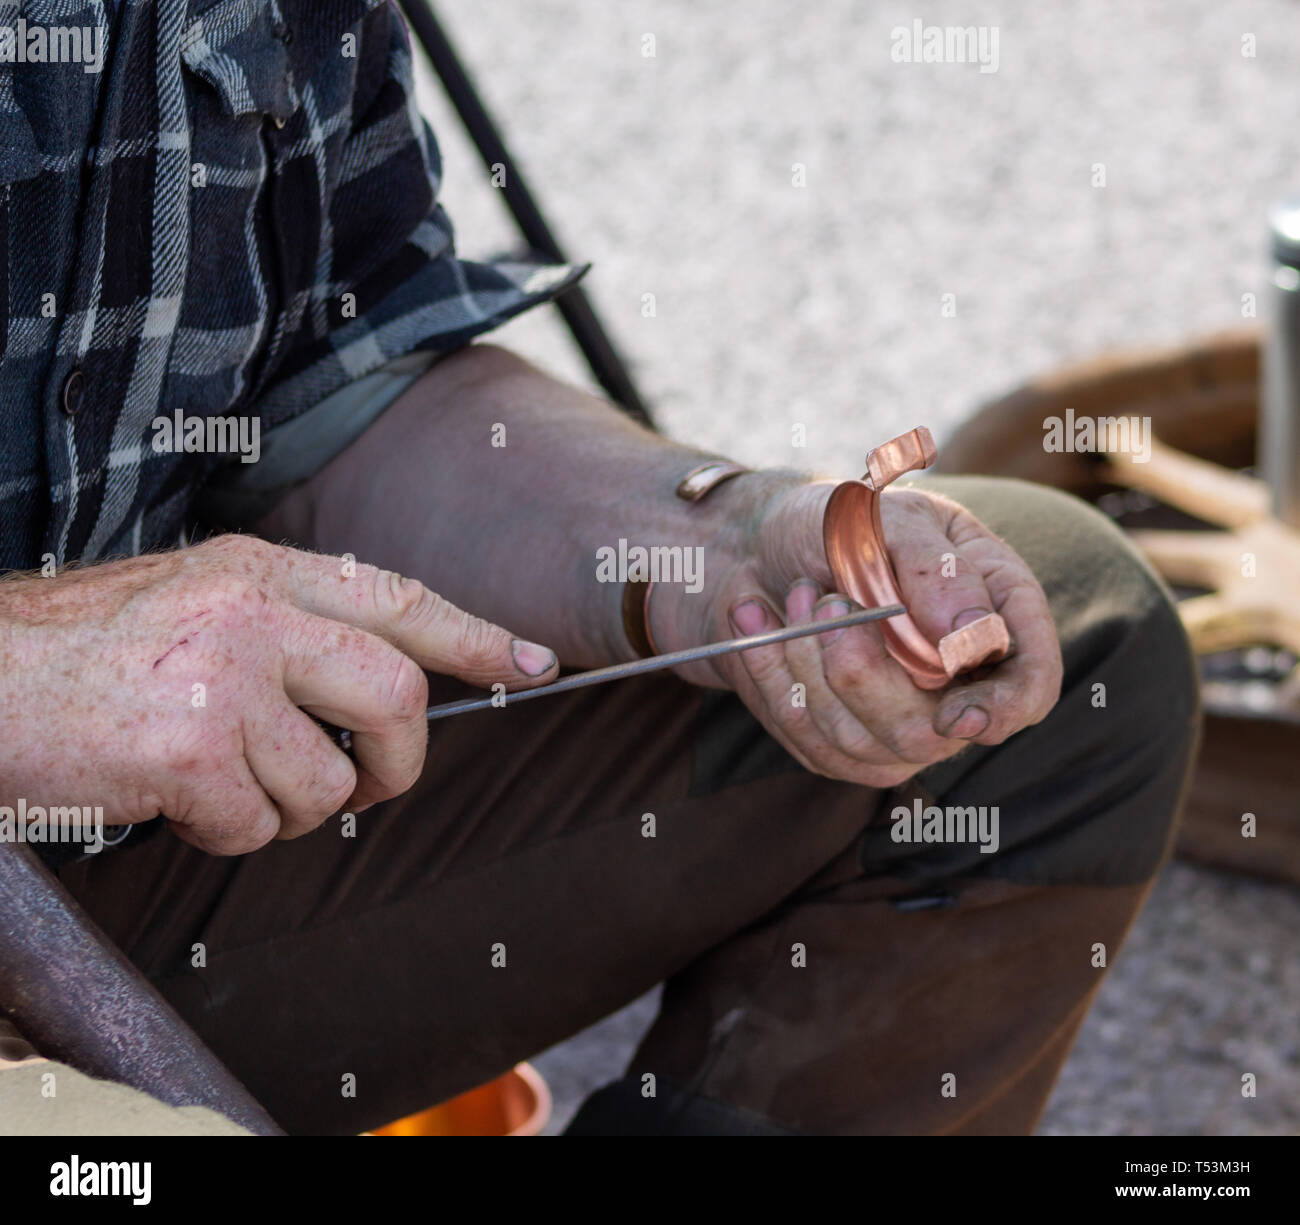 Ramaio lavoratore in metallo facendo un braccialetto di rame con utensili a mano Foto Stock